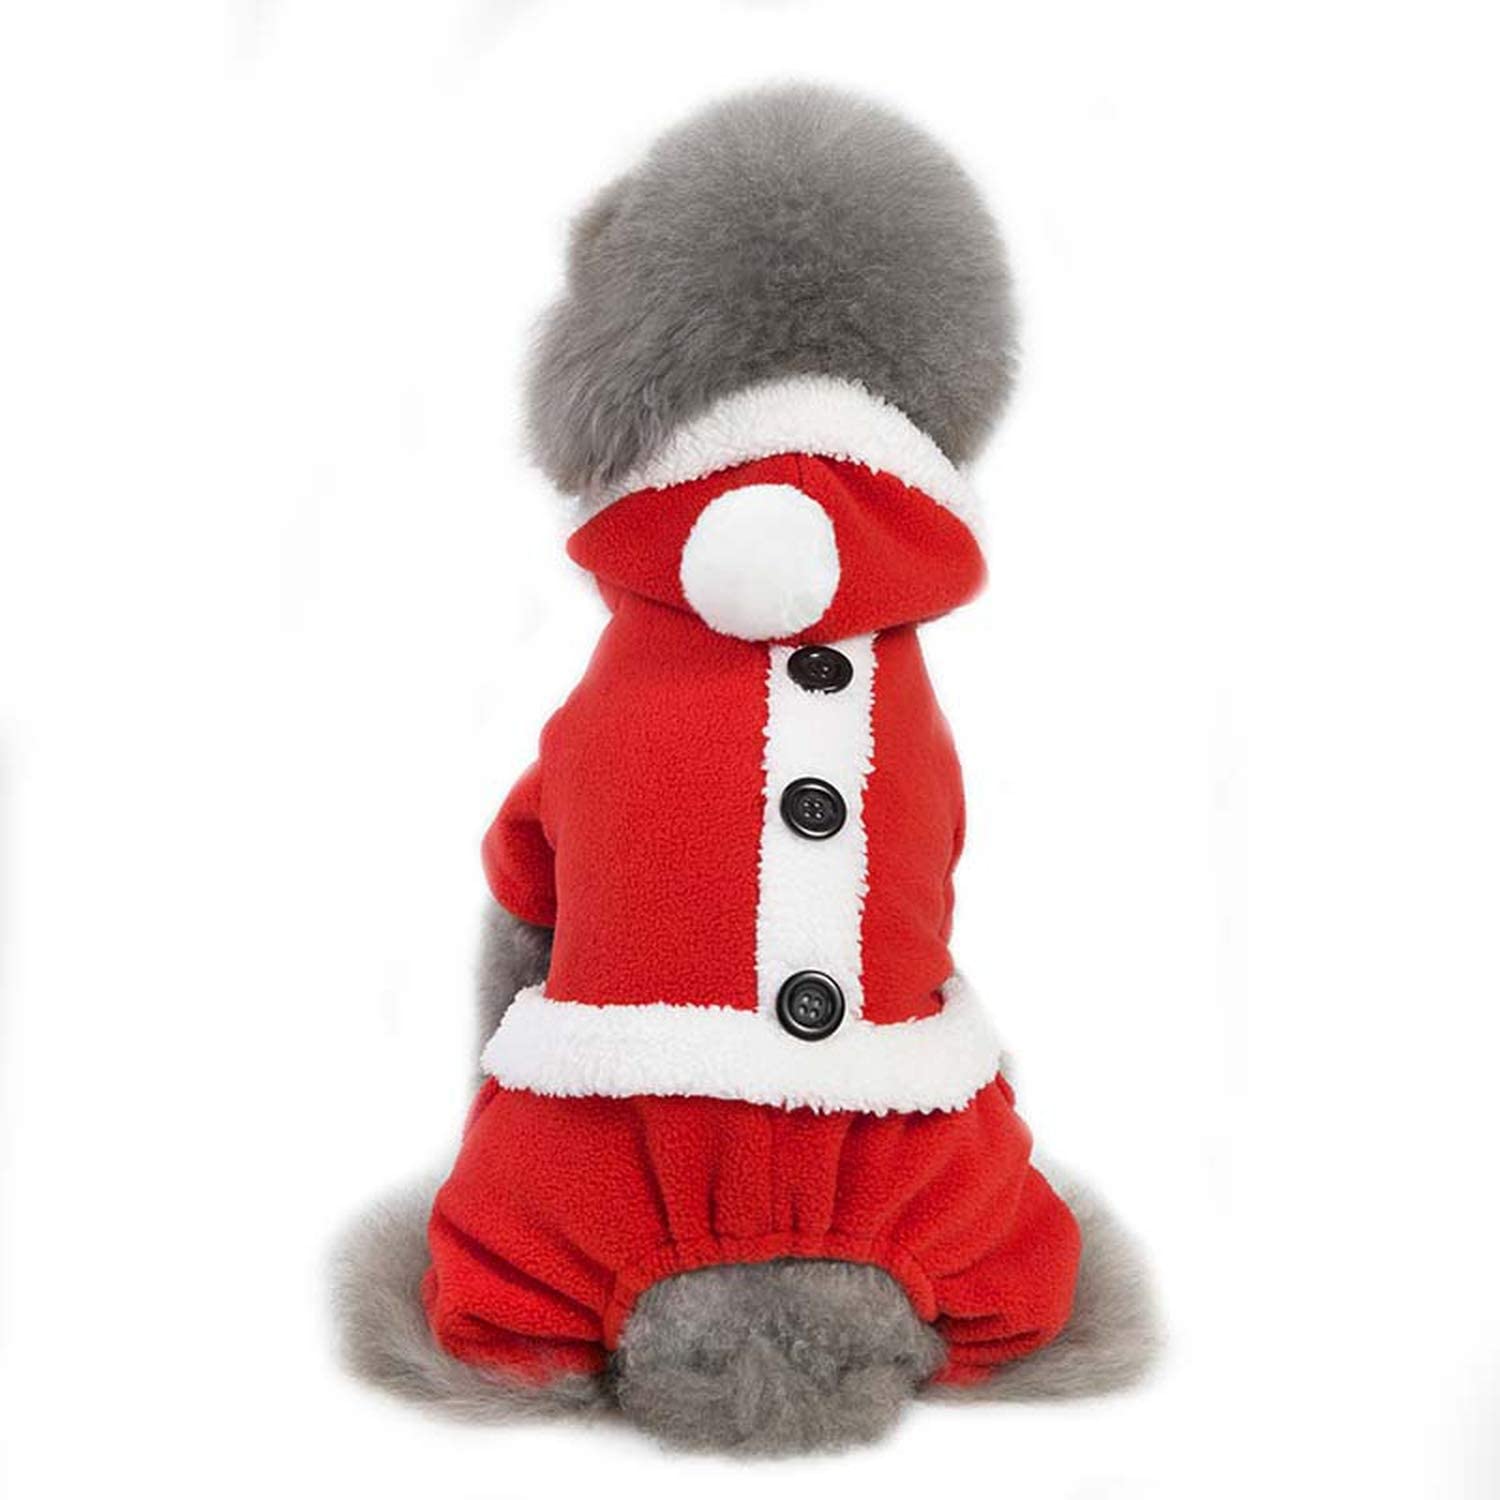  NA Ropa de Navidad para Perros cálidos Vestido y Abrigo Ropa para Cachorros Ropa para Mascotas para Perros Yorkshire Terrier Chihuahua 2 M 